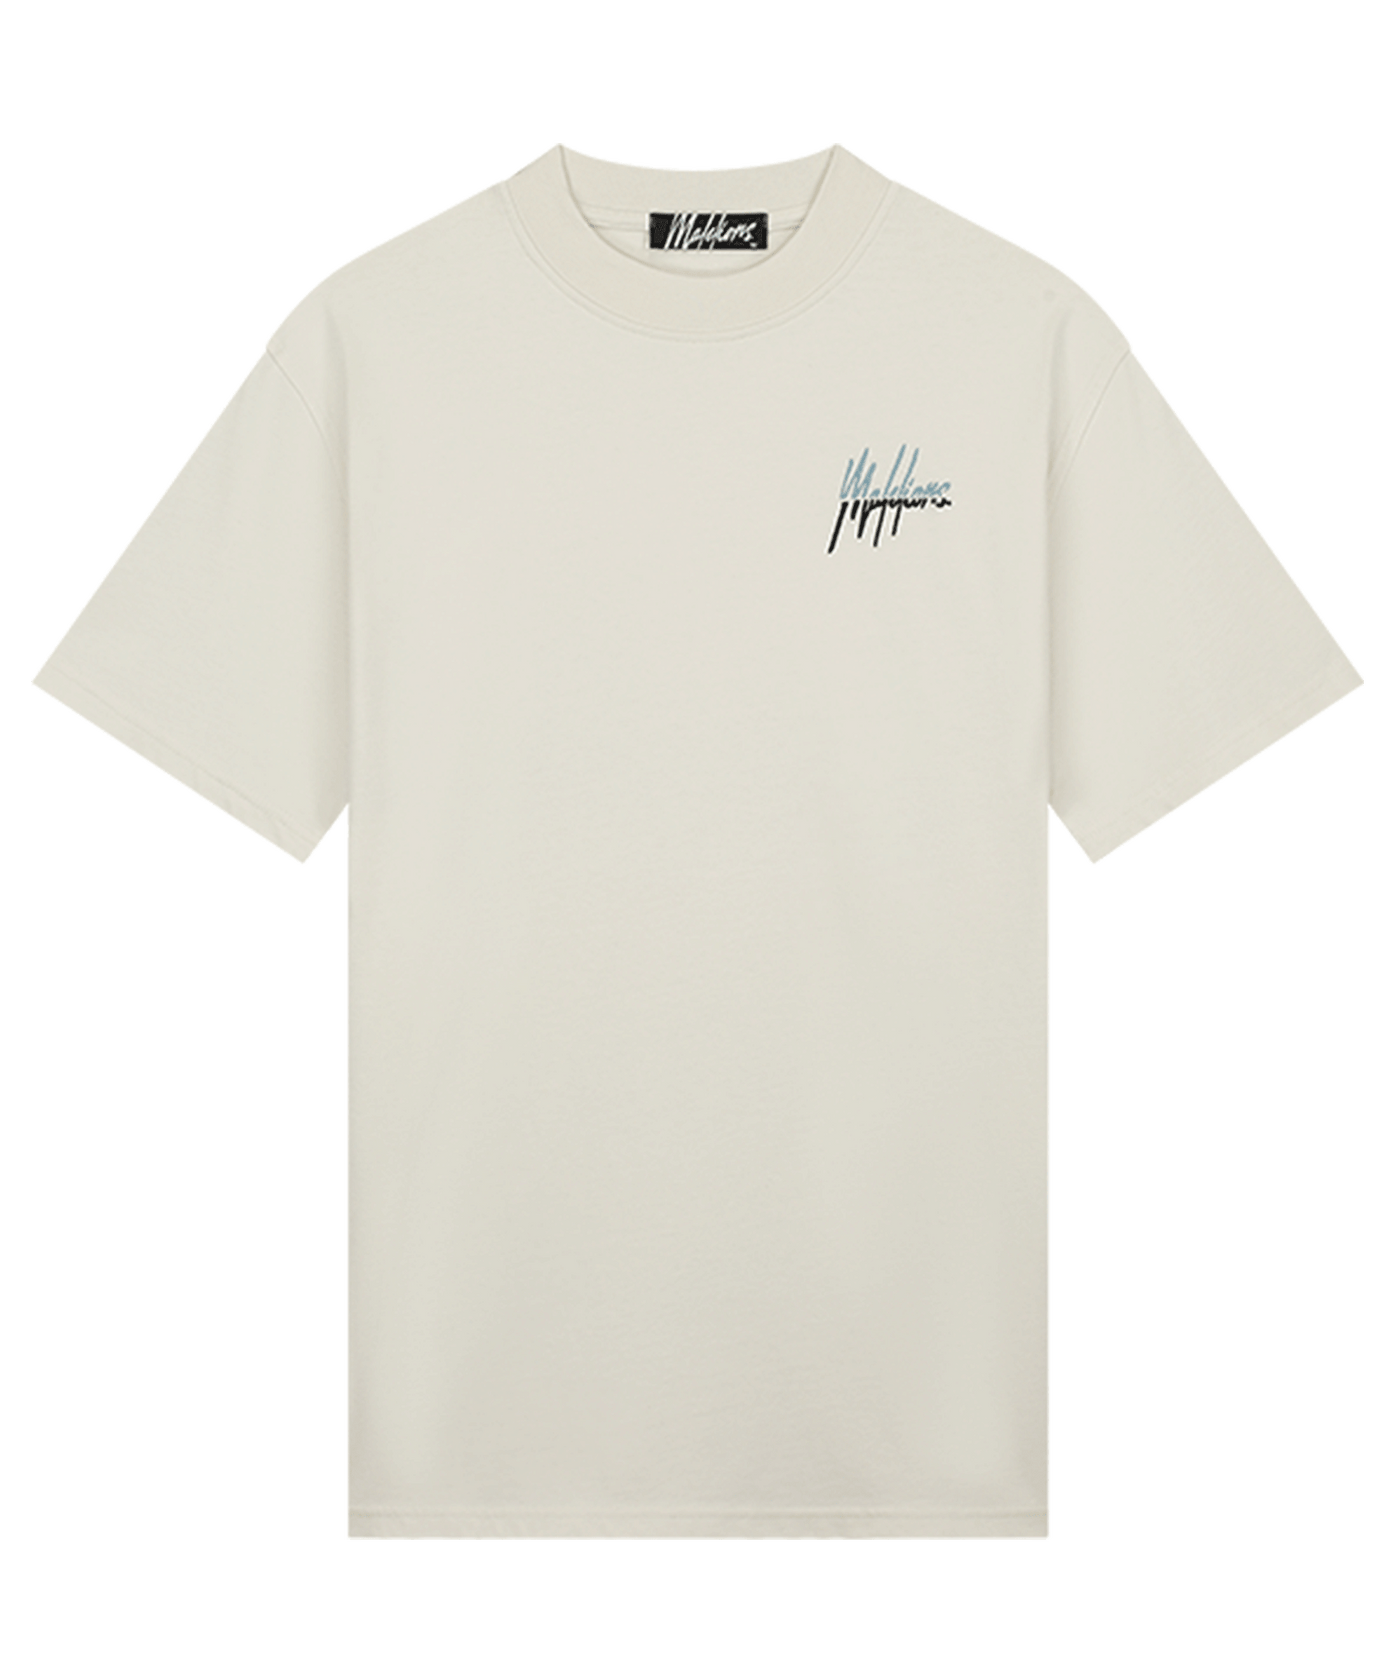 Malelions - Split - T-shirt - White/lt Blue